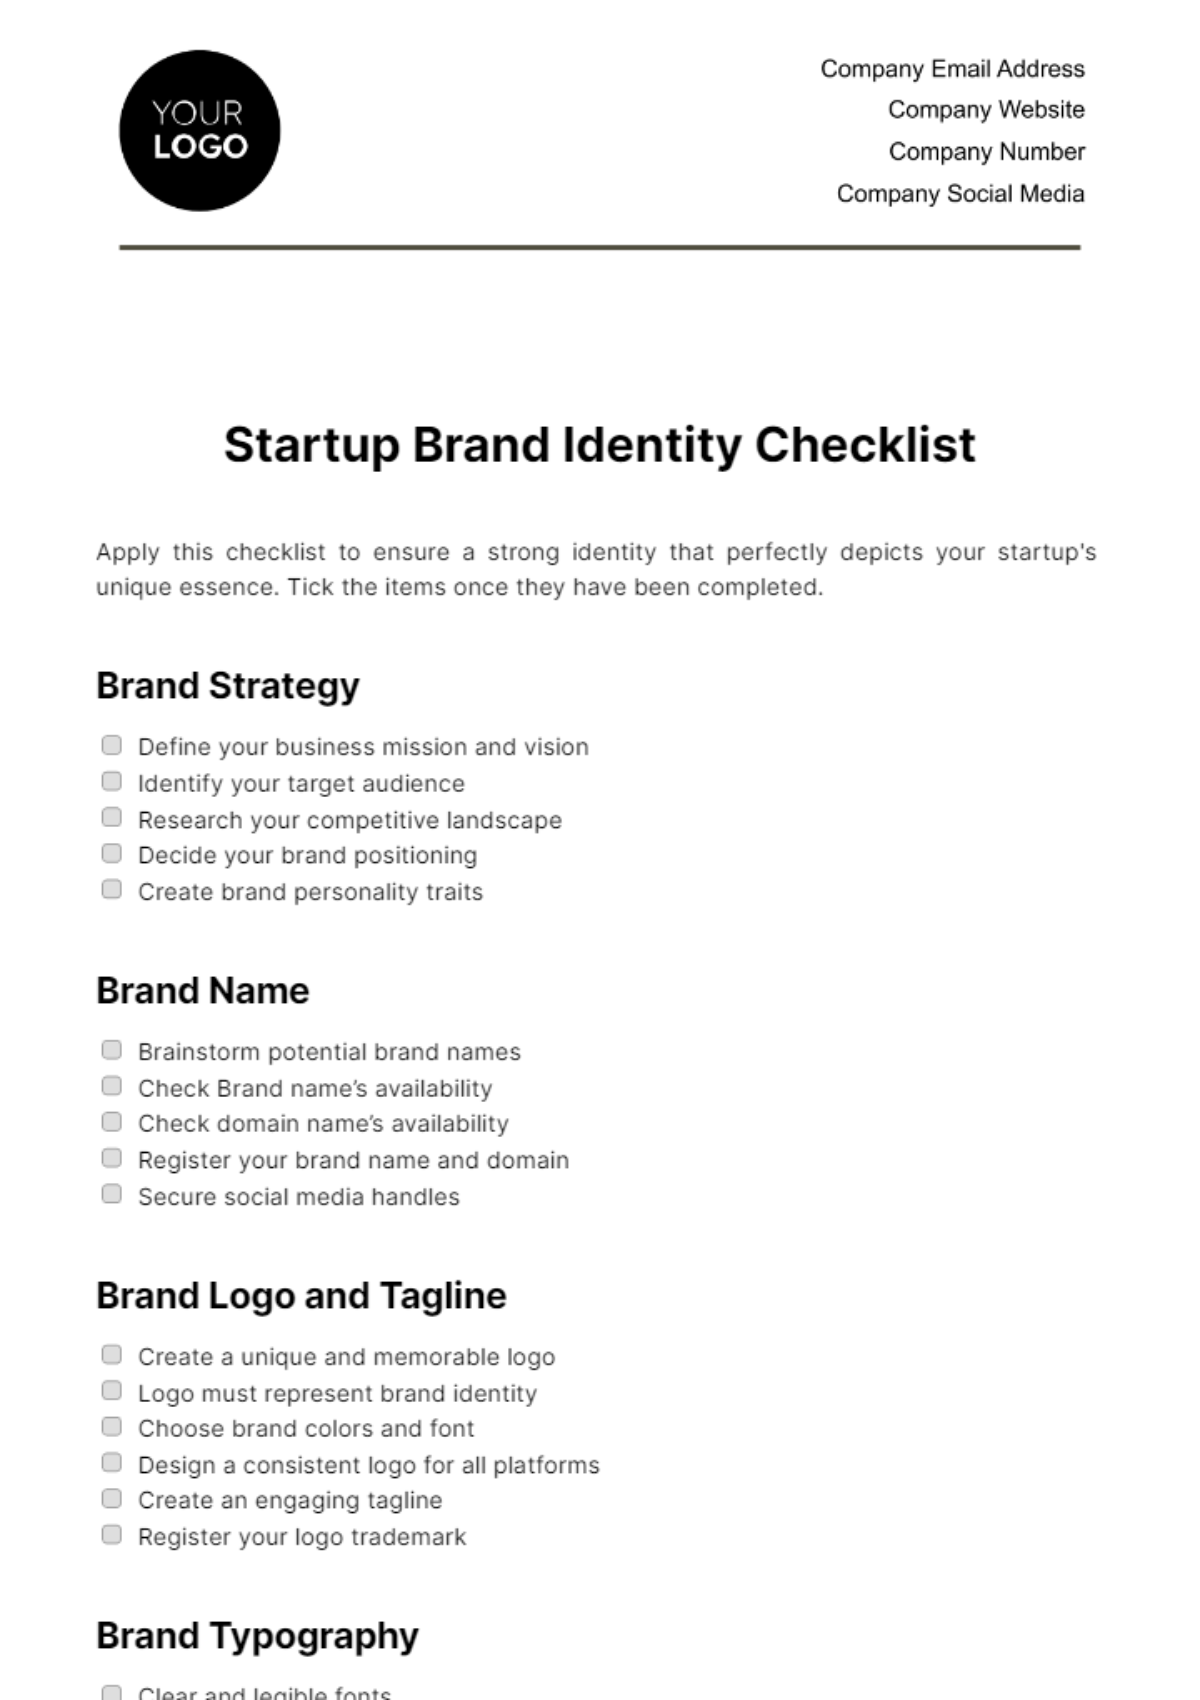 Startup Brand Identity Checklist Template